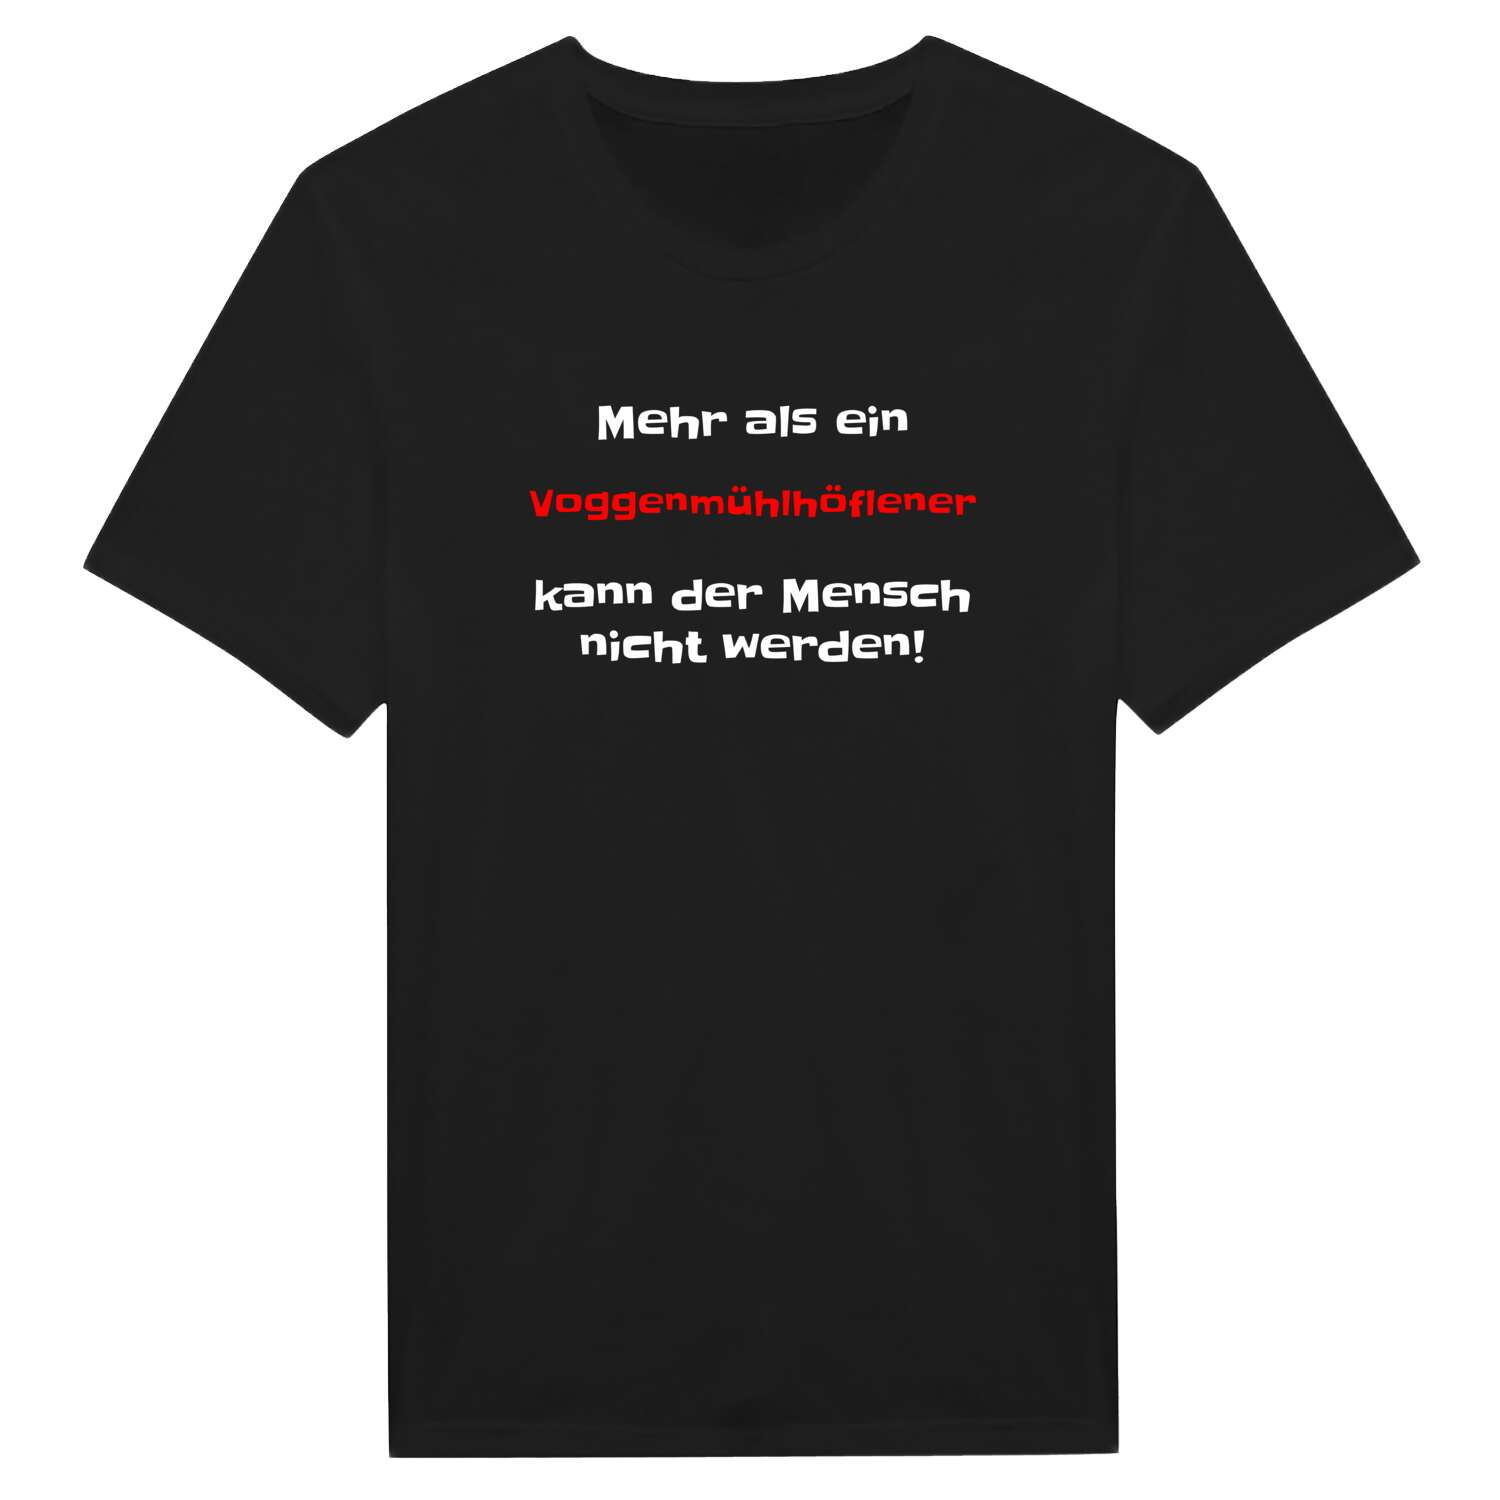 Voggenmühlhöfle T-Shirt »Mehr als ein«